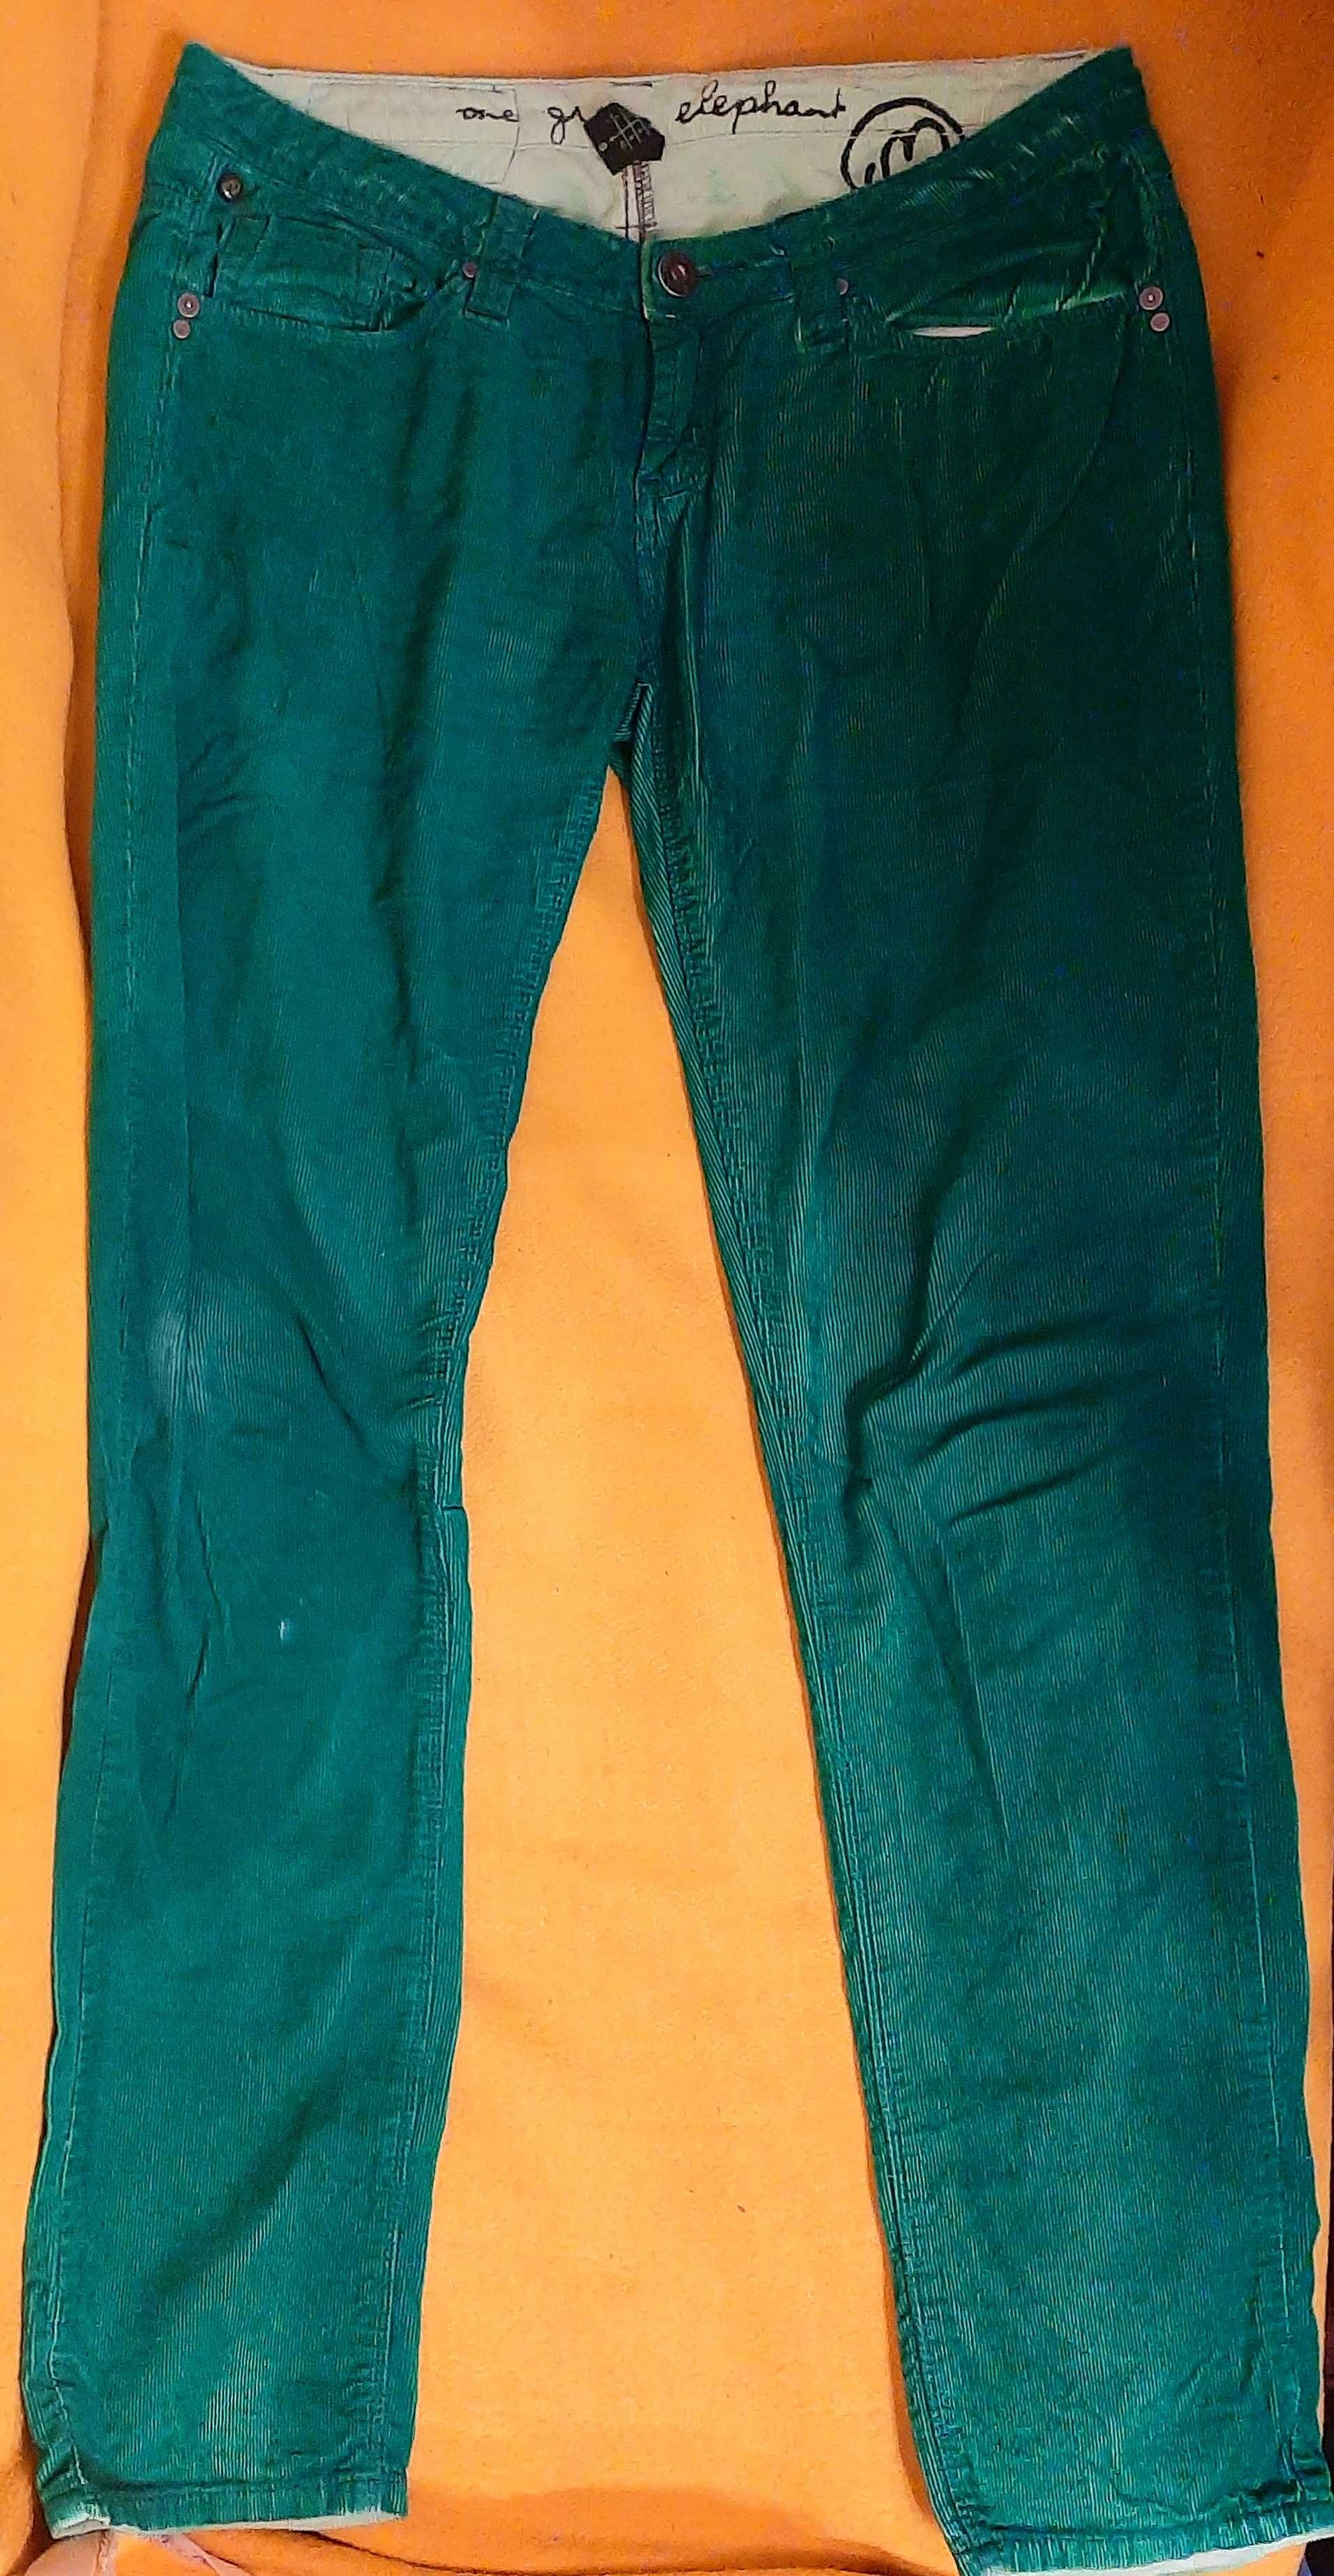 Spodnie One Green Elephant, rozmiar 38